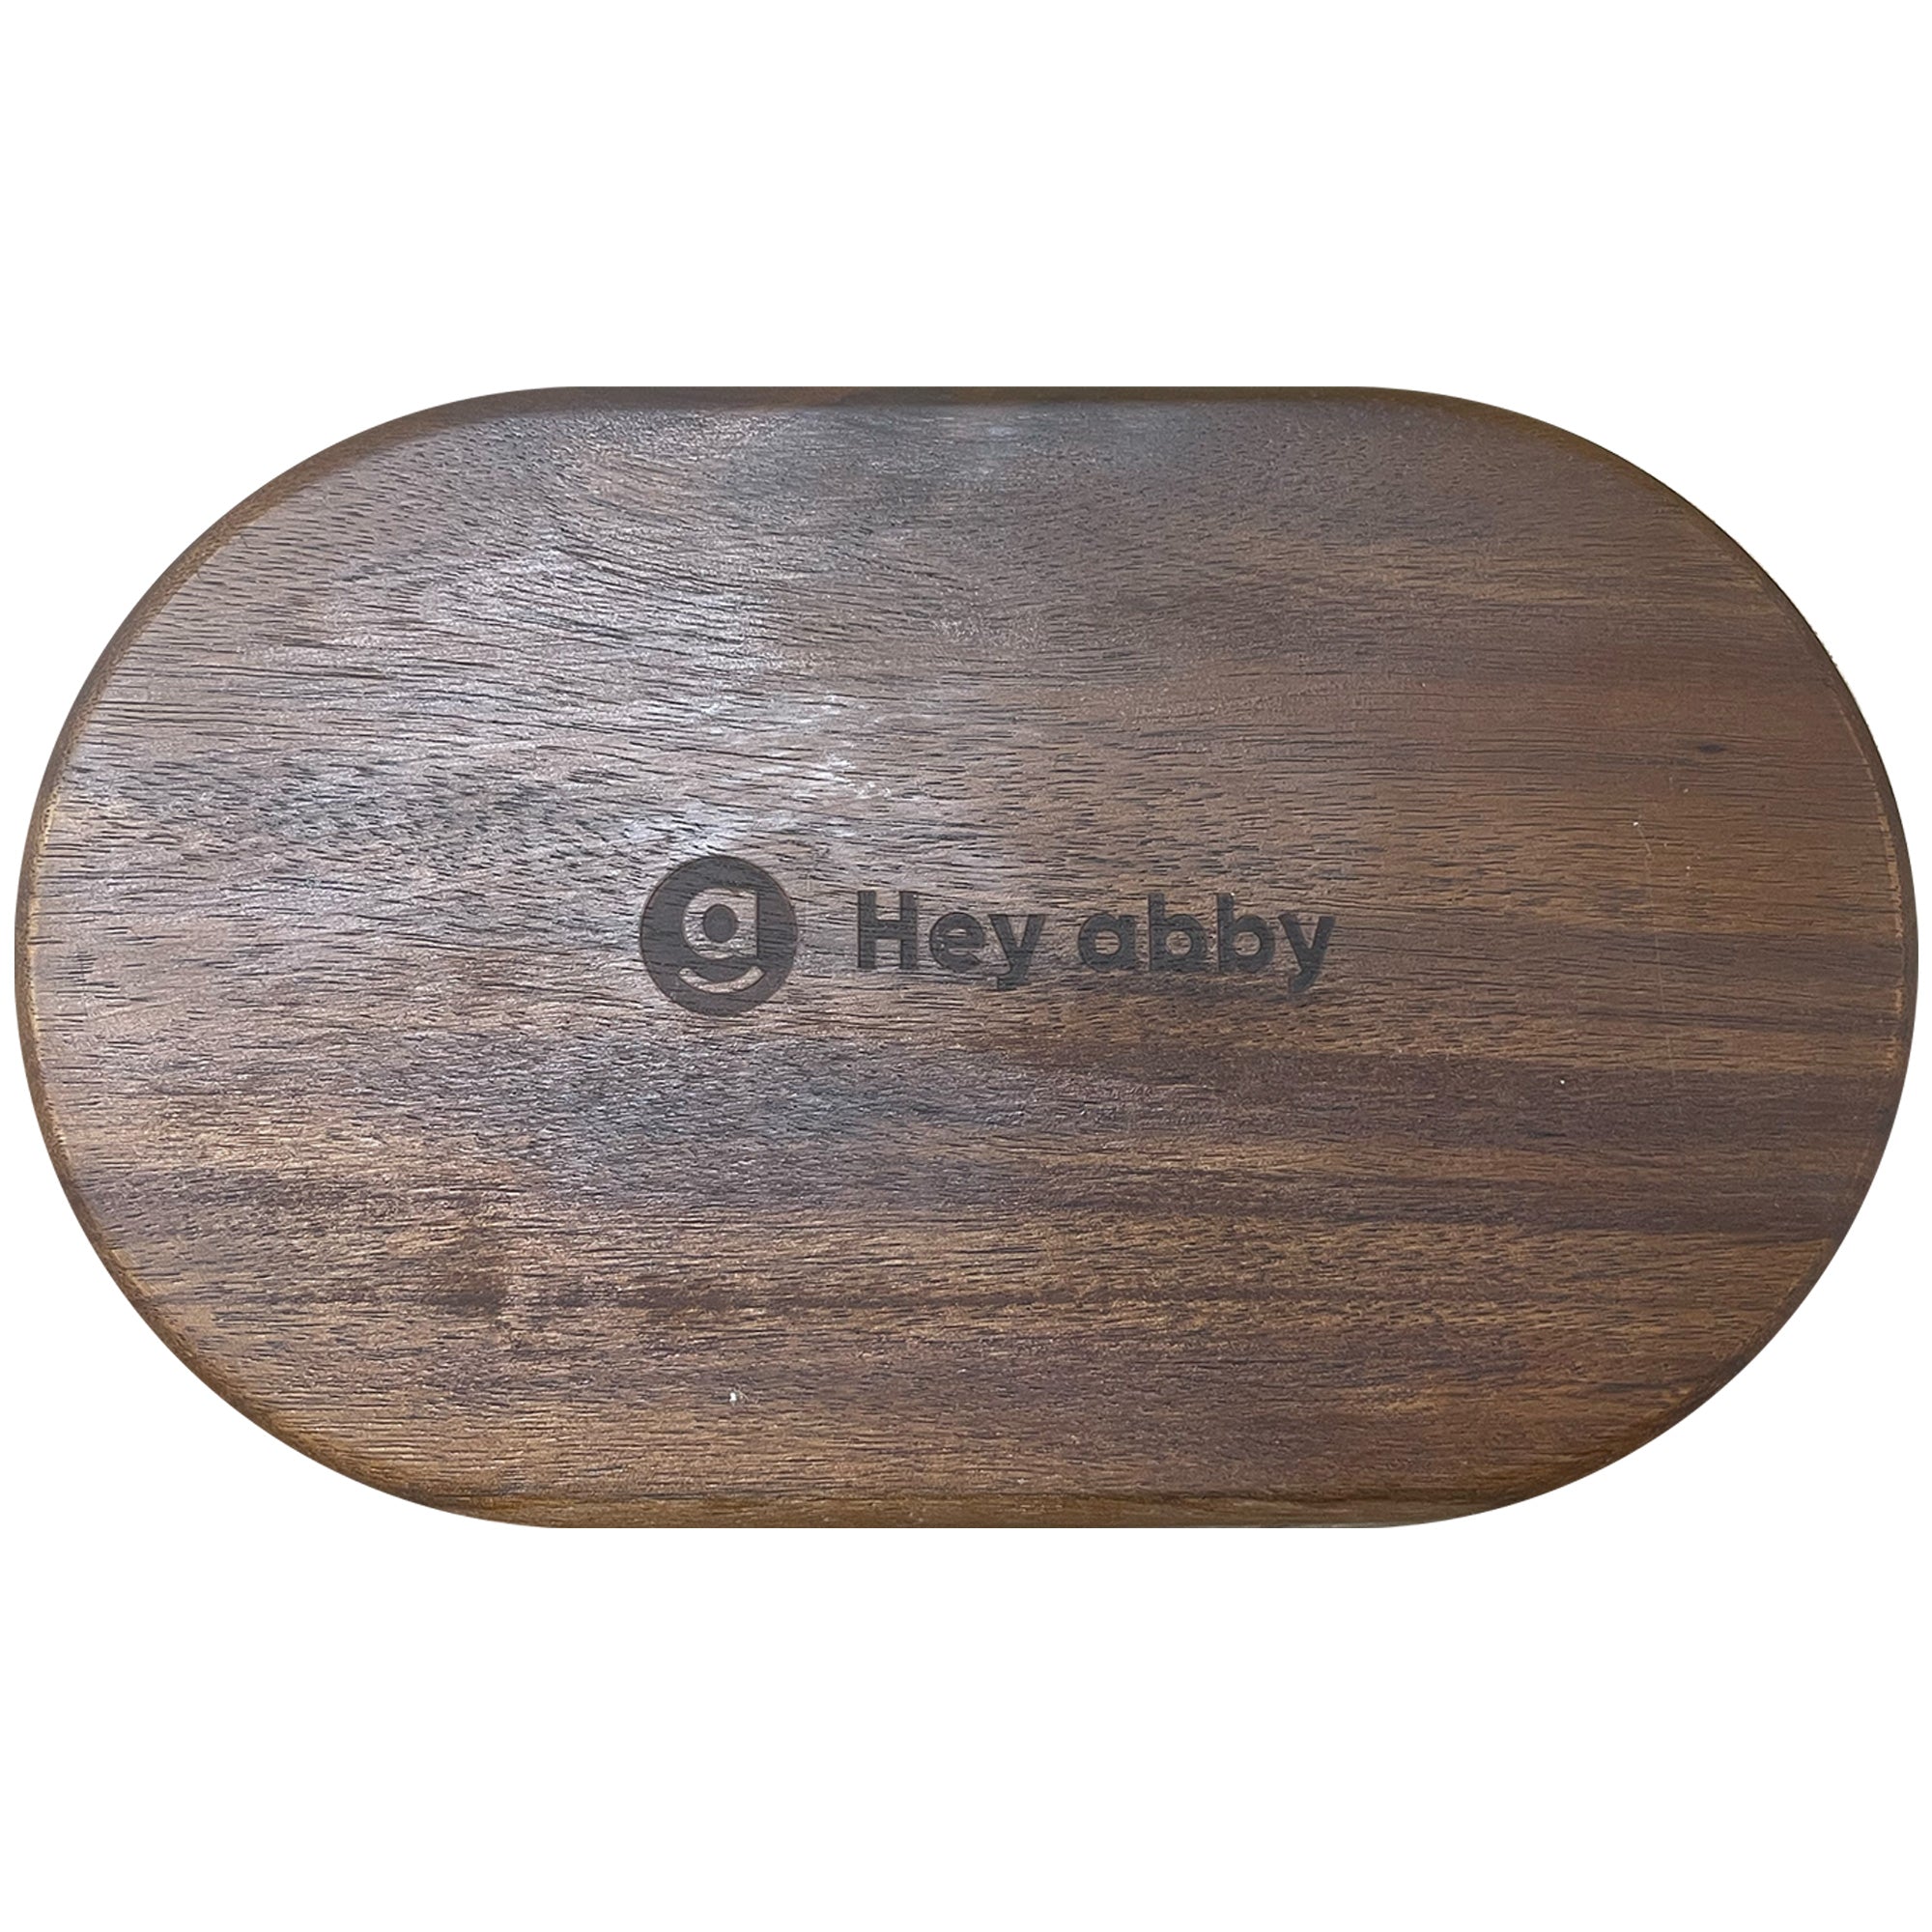 Hey abby Acacia Wood Tray_product image 2